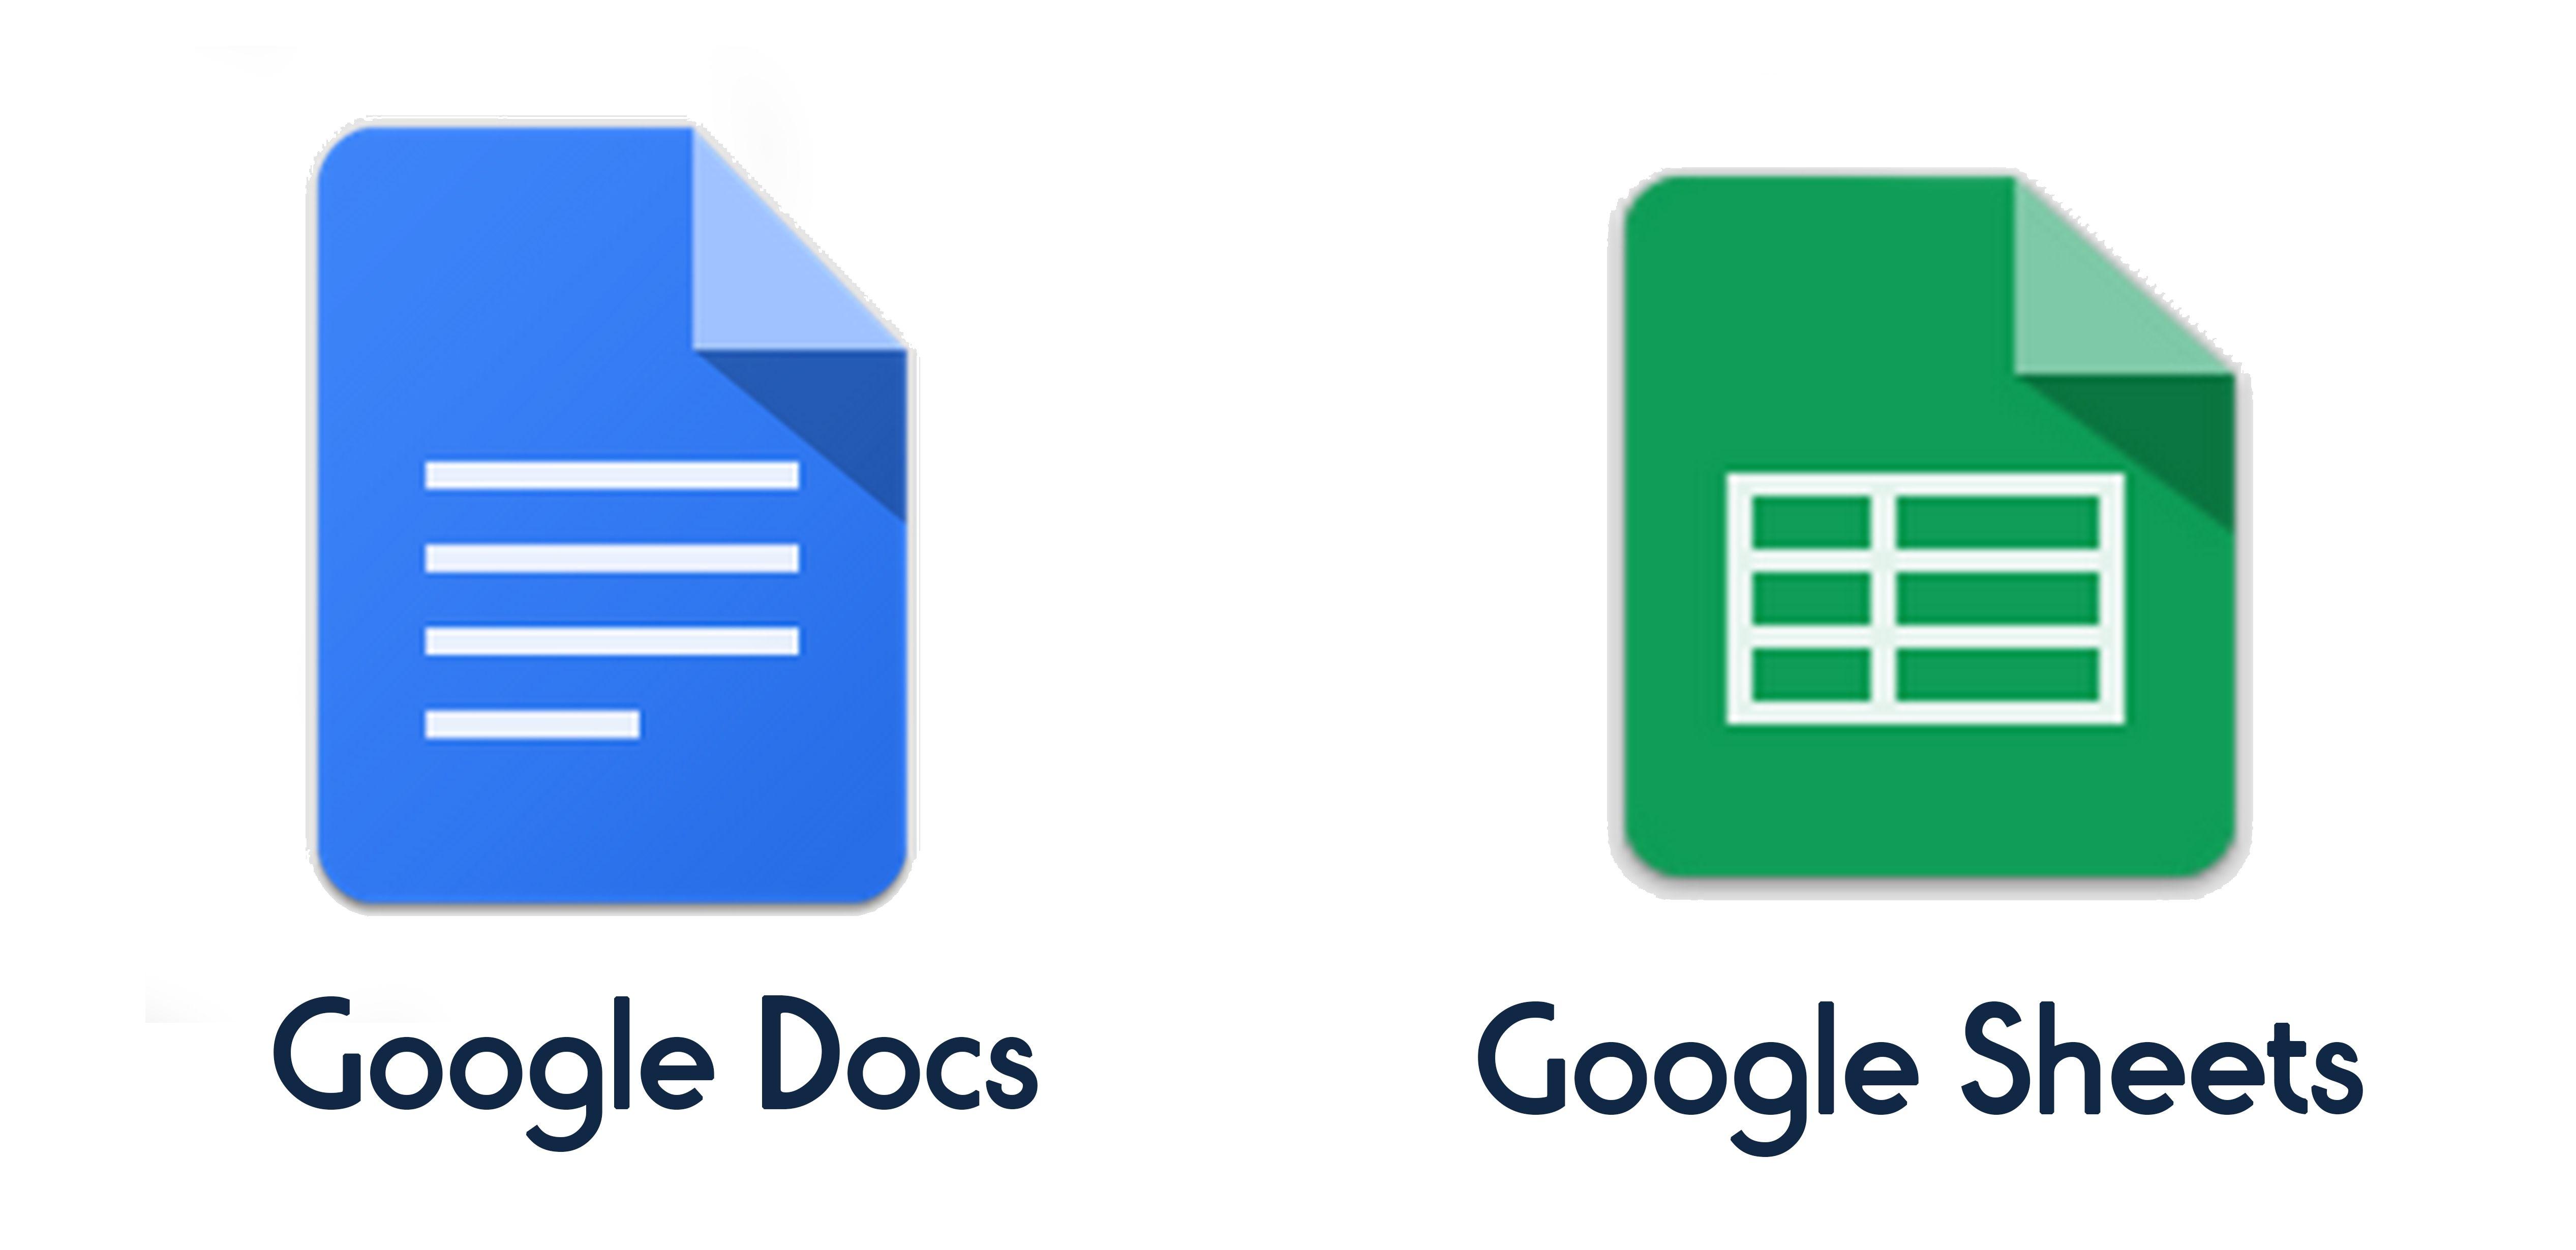 Google sheets sign in. Гугл документы. Гугл таблицы лого. Google docs документы. Гугл документы логотип.